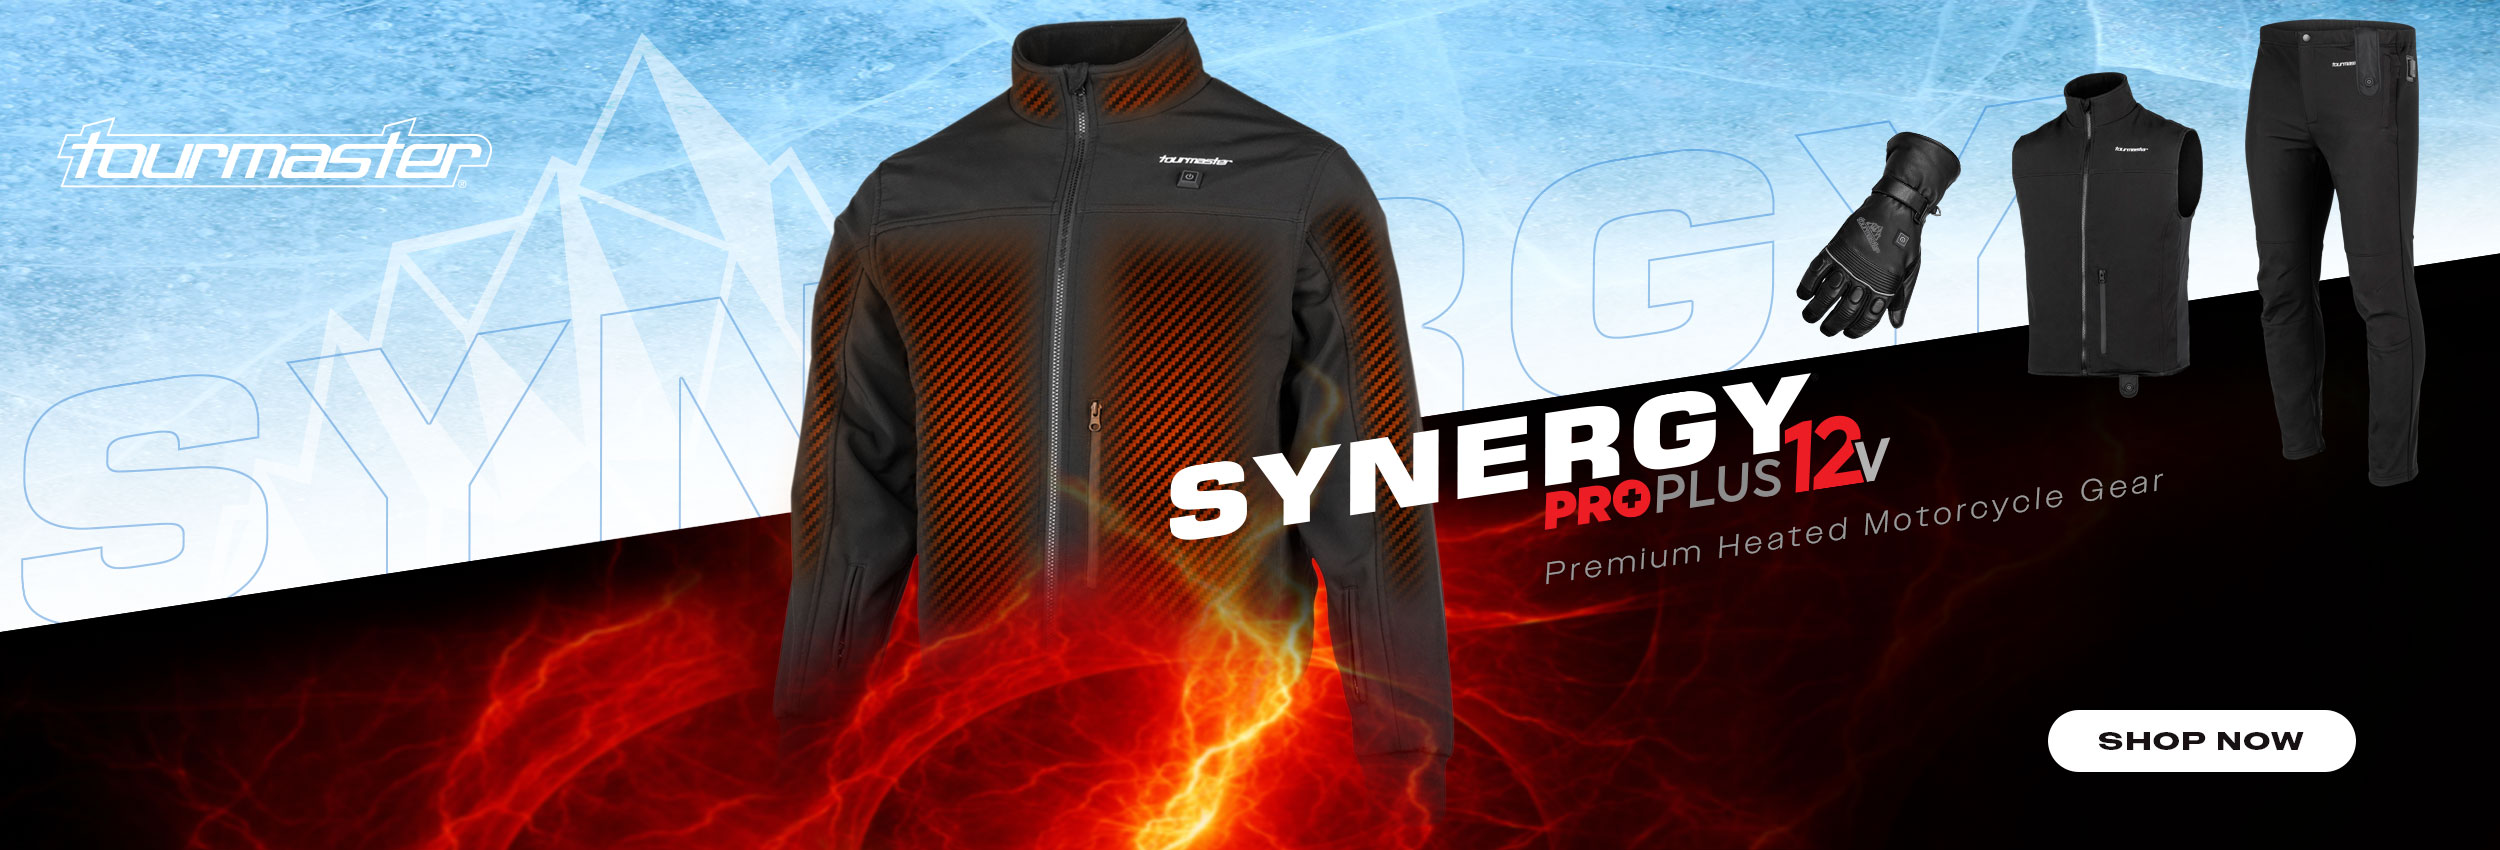 Tourmaster Synergy Pro Heated Jacket